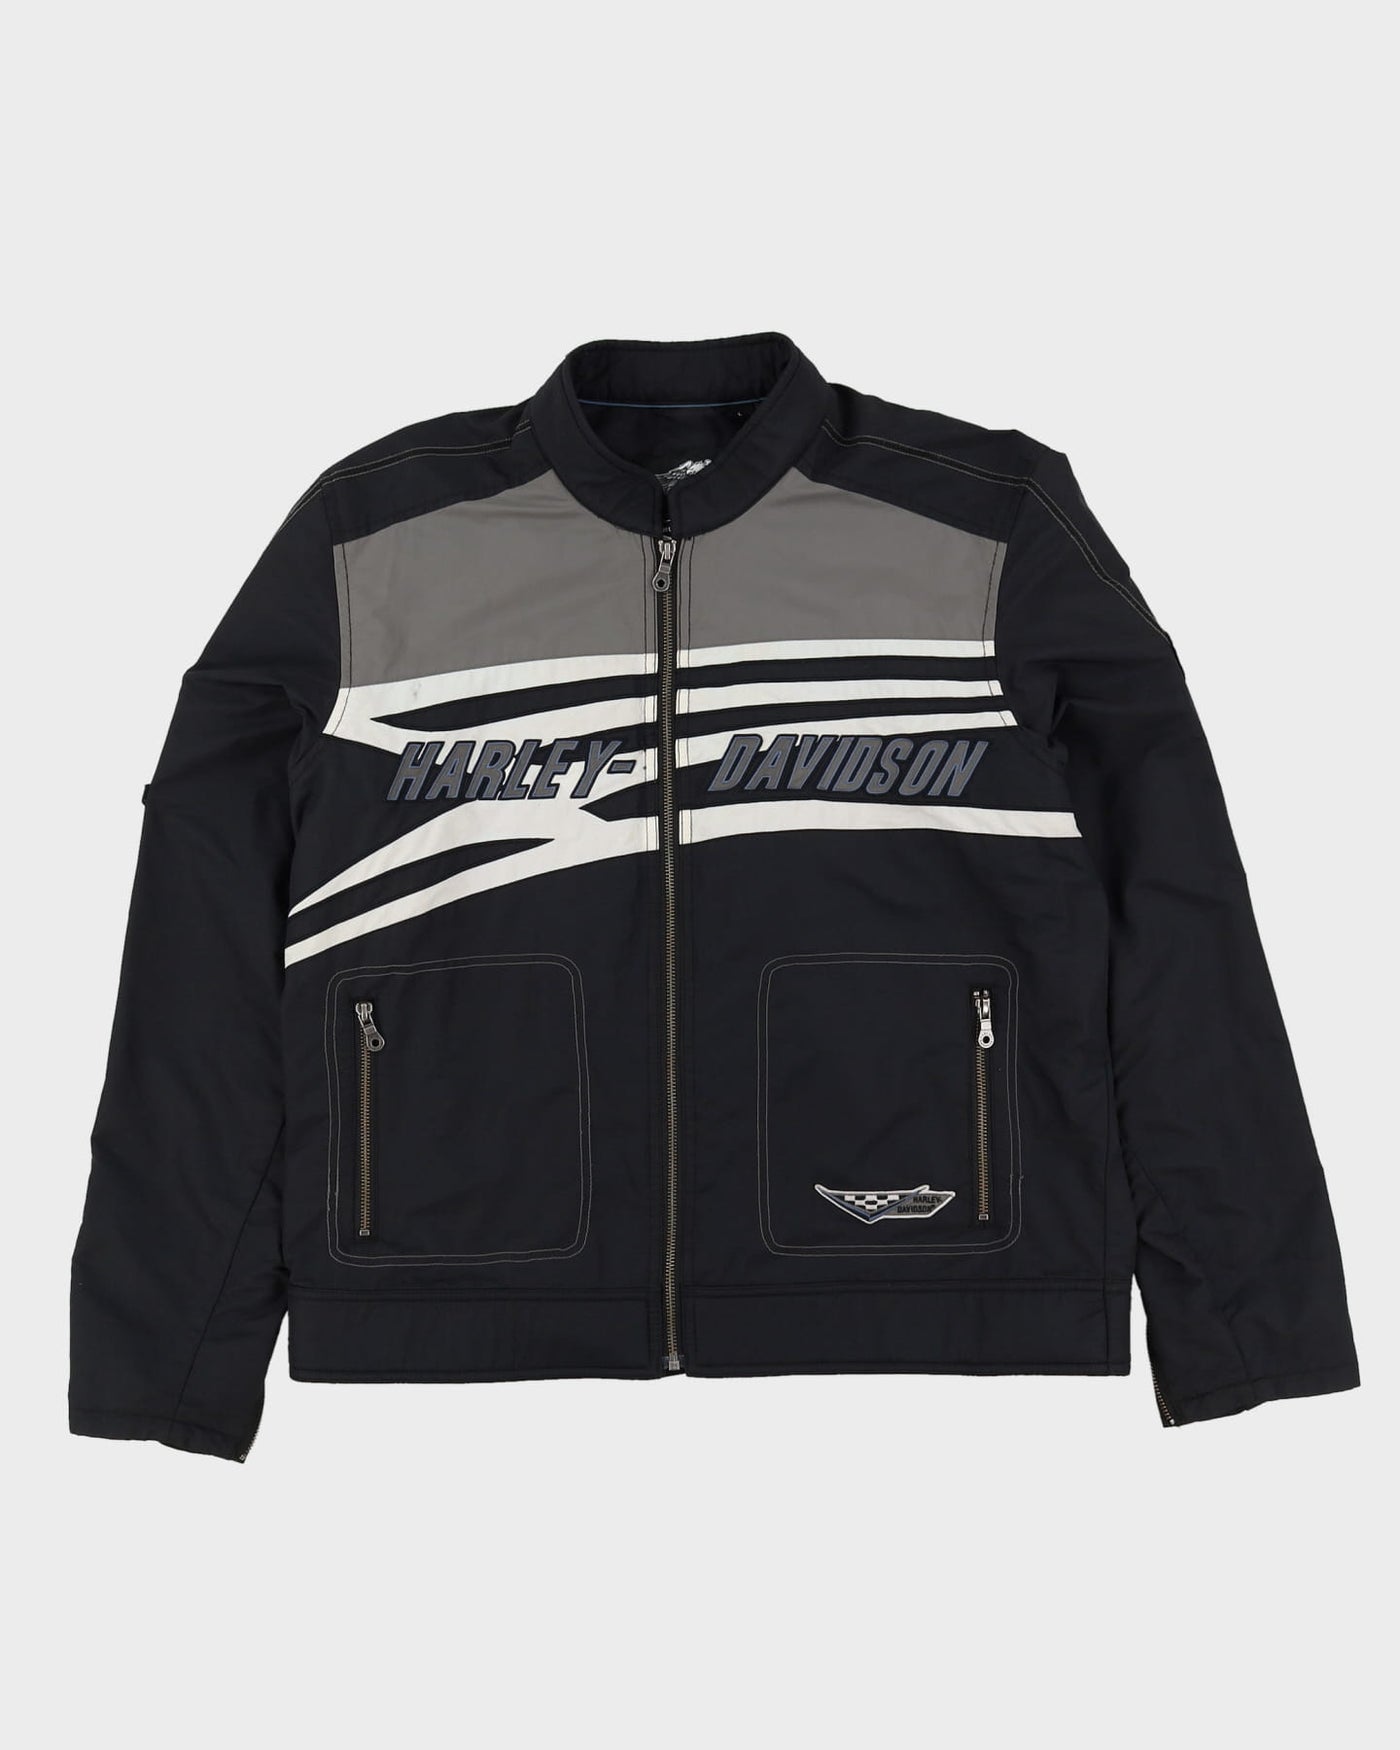 90s Harley Davidson Black / Grey Biker Jacket - L